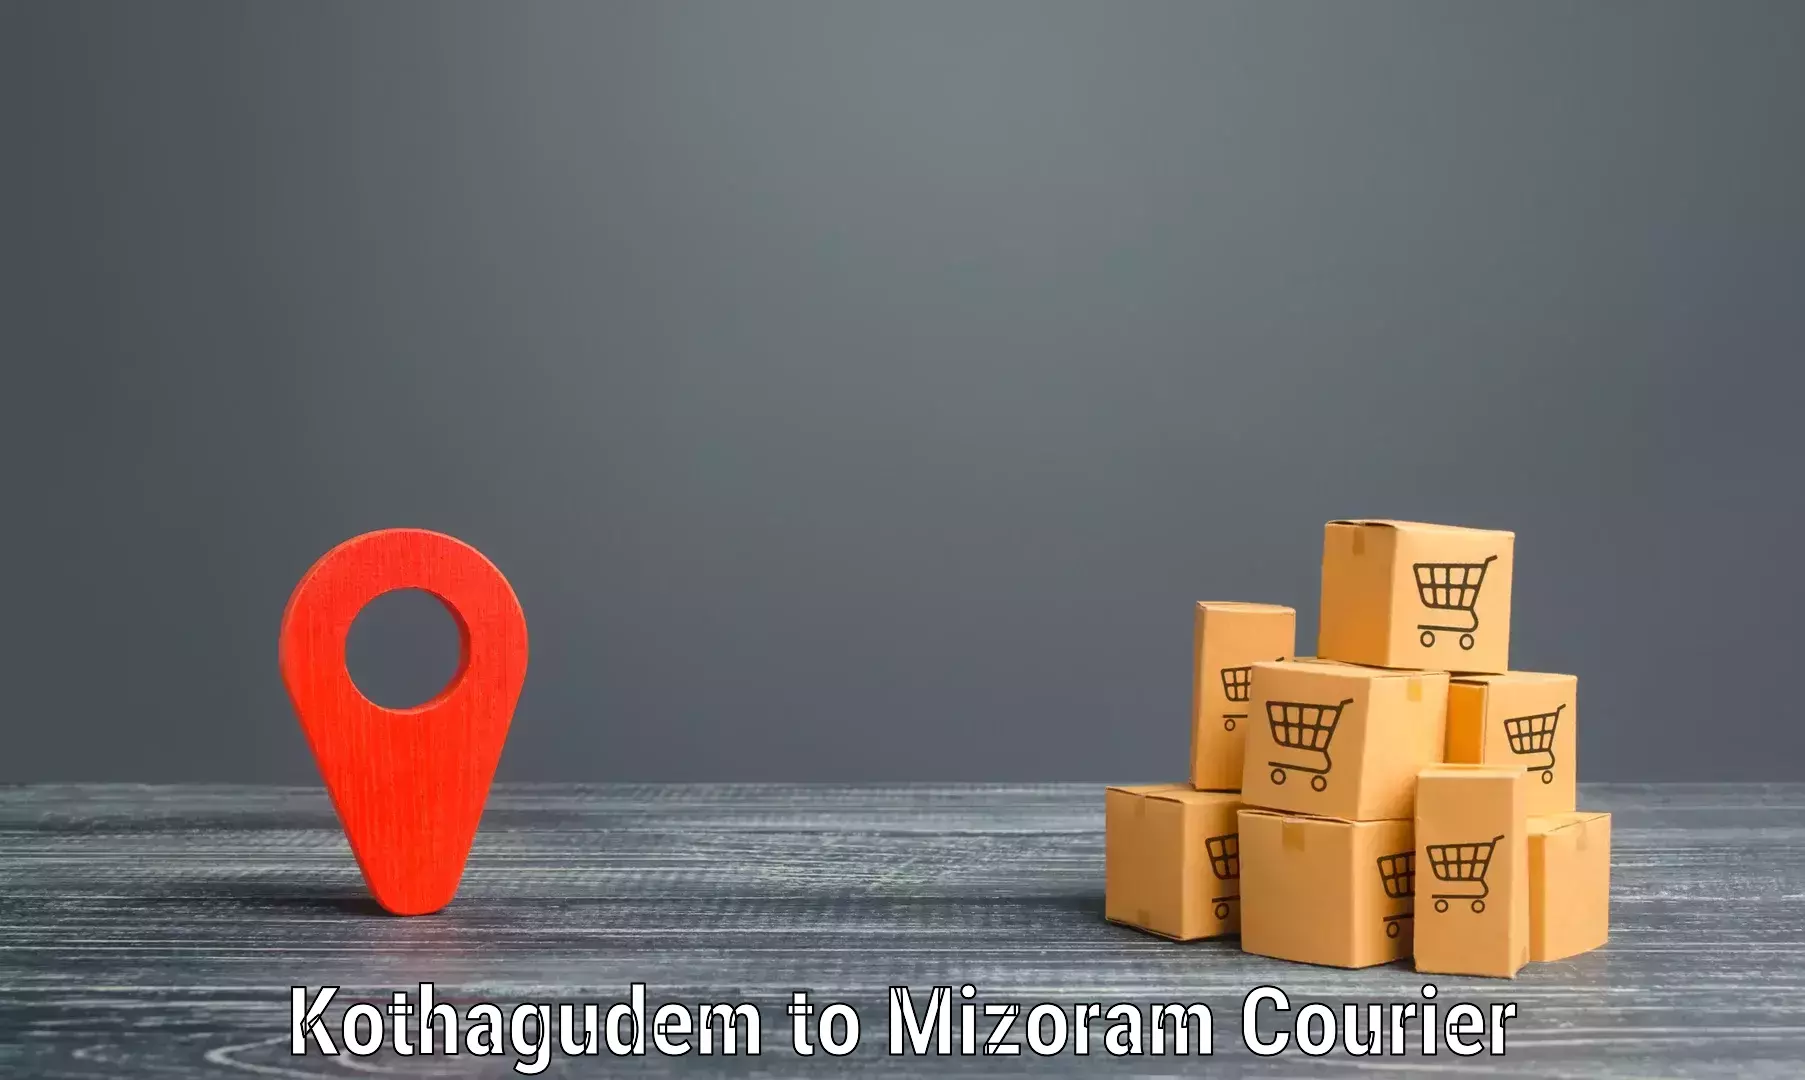 24/7 courier service Kothagudem to Saitual